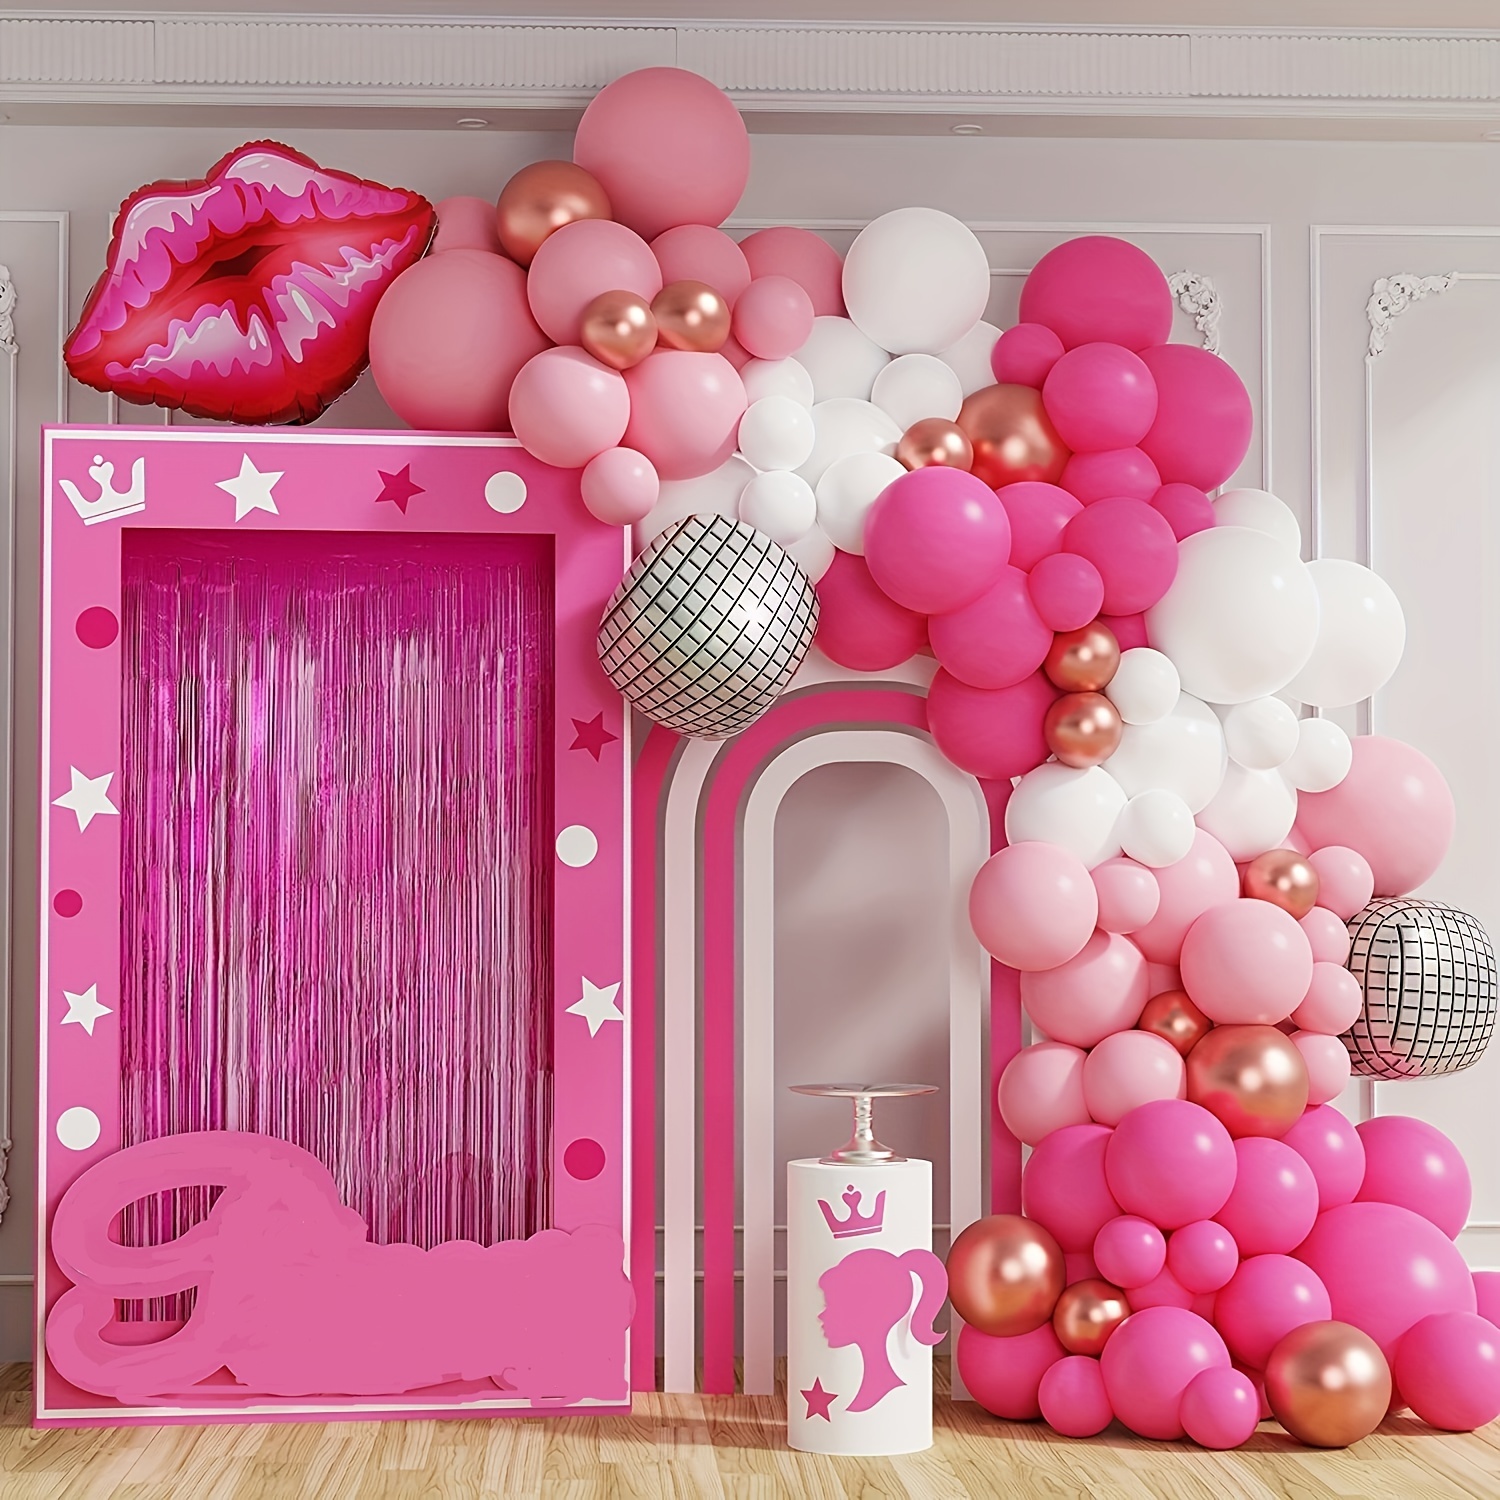 Kit de arco de globos rosados, 138 globos de látex de oro rosa metálico  brillante y dorado cromado, perfecto para fiestas de cumpleaños, despedidas  de